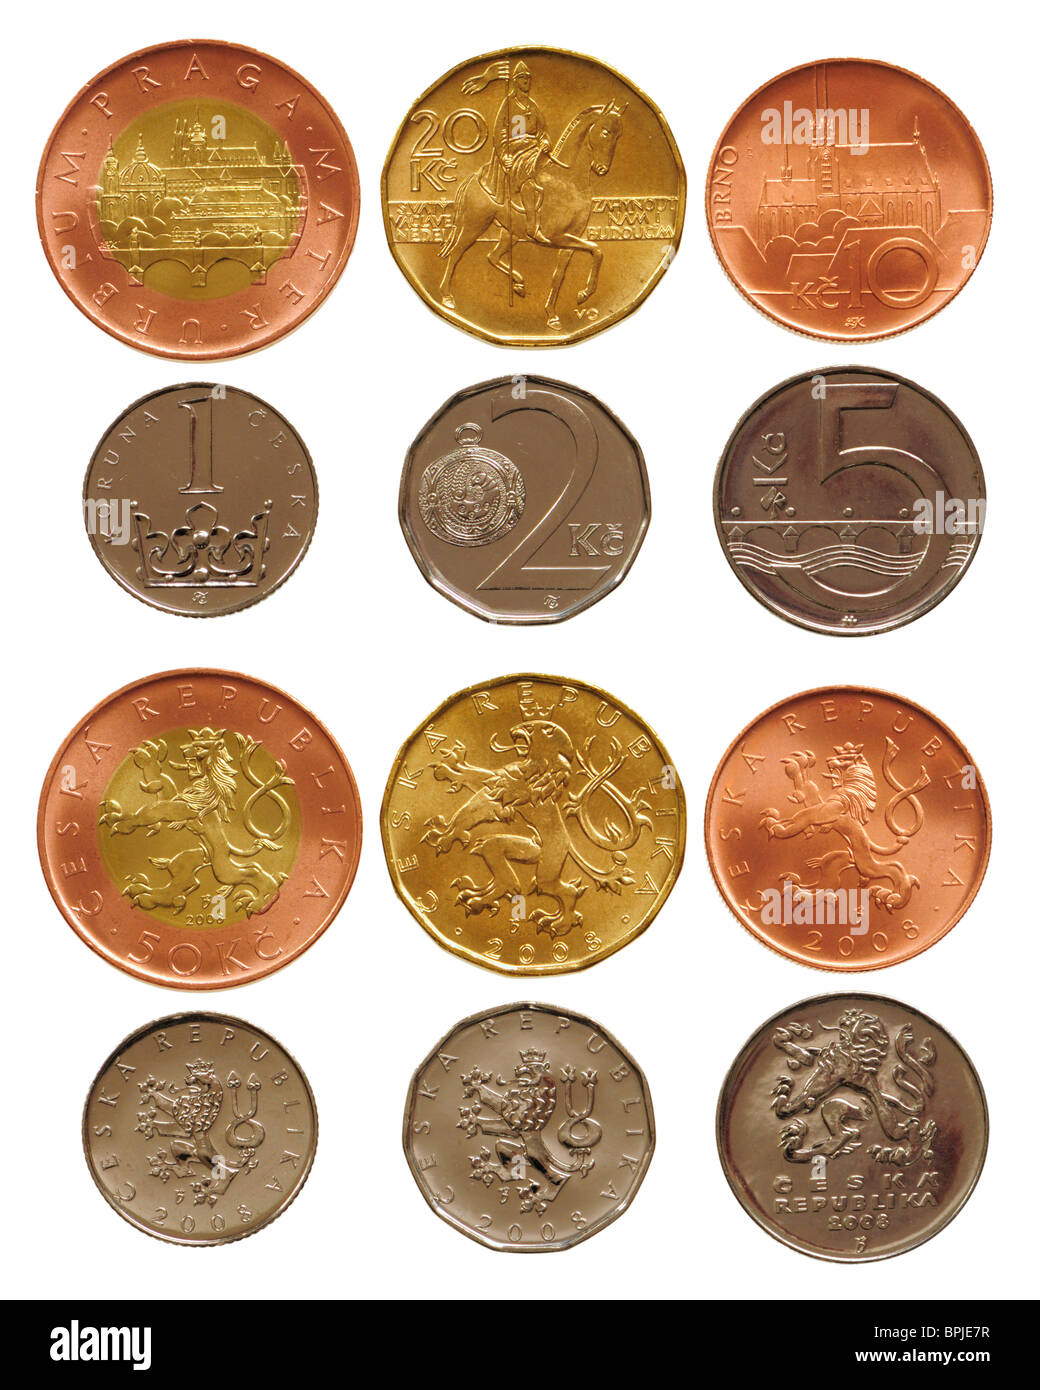 Tschechische Münzen von 1 bis 50 Kc (Kronen) derzeit gültige Währung in der Tschechischen Republik Stockfoto